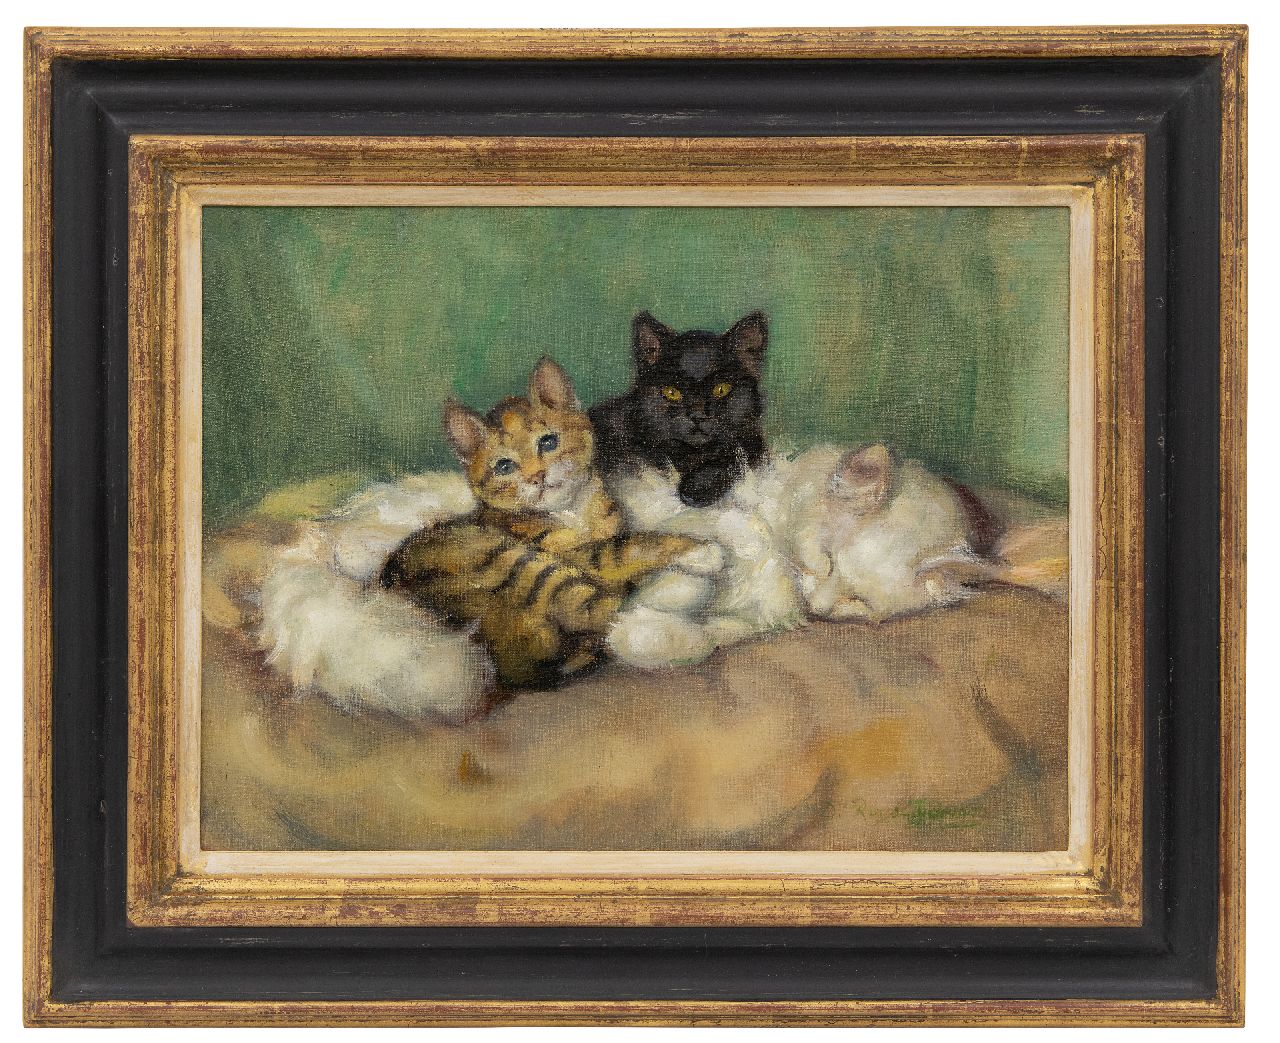 Tijdeman E.M.  | Ernestine Marie 'Dé' Tijdeman | Schilderijen te koop aangeboden | Moederpoes met twee kittens, olieverf op doek 30,5 x 40,5 cm, gesigneerd rechtsonder